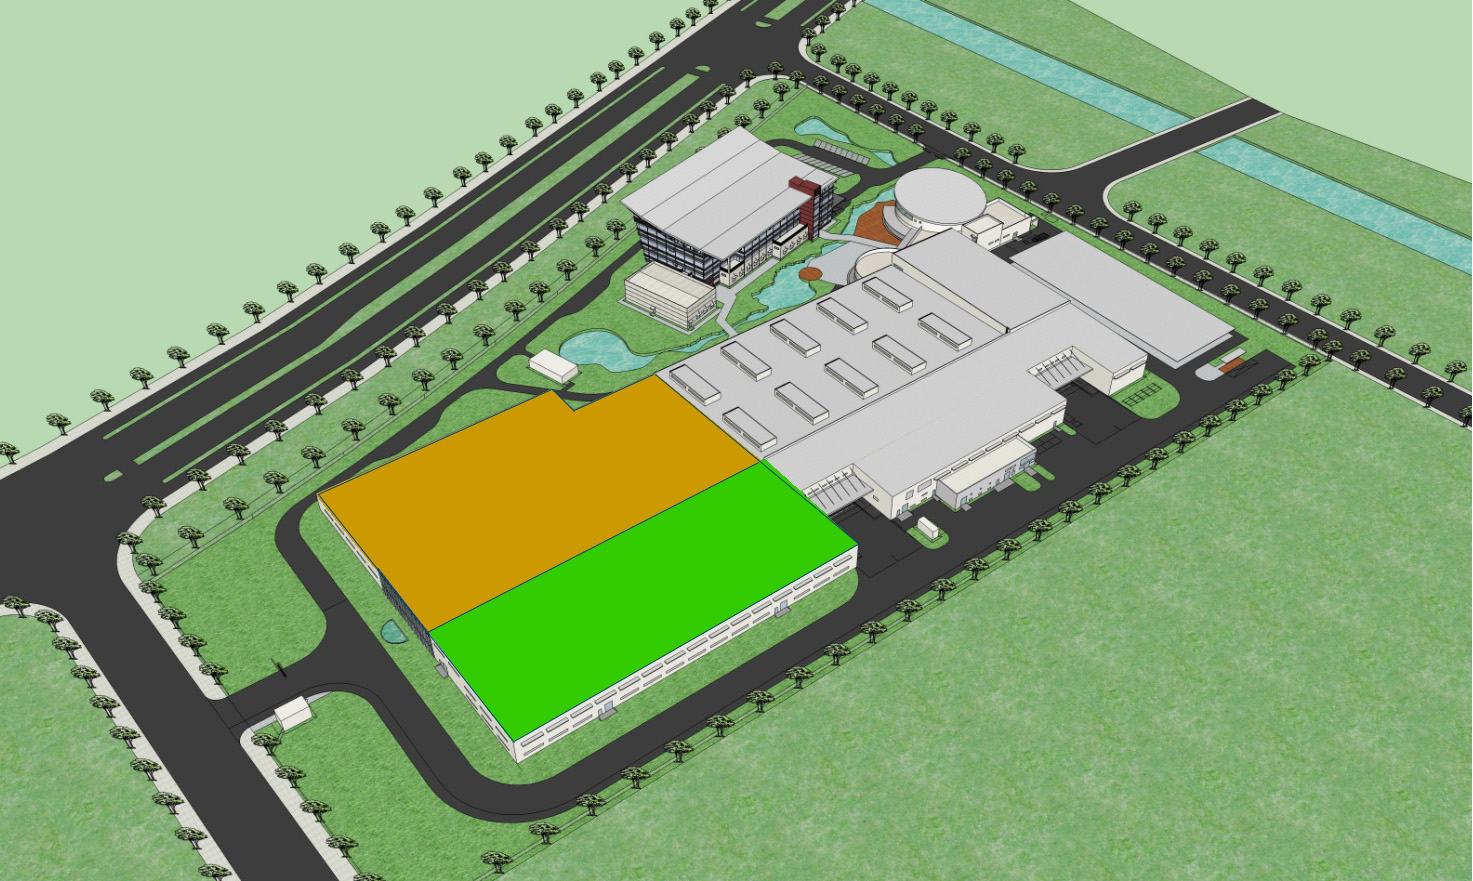 Scanfil Suzhou expansion plan image